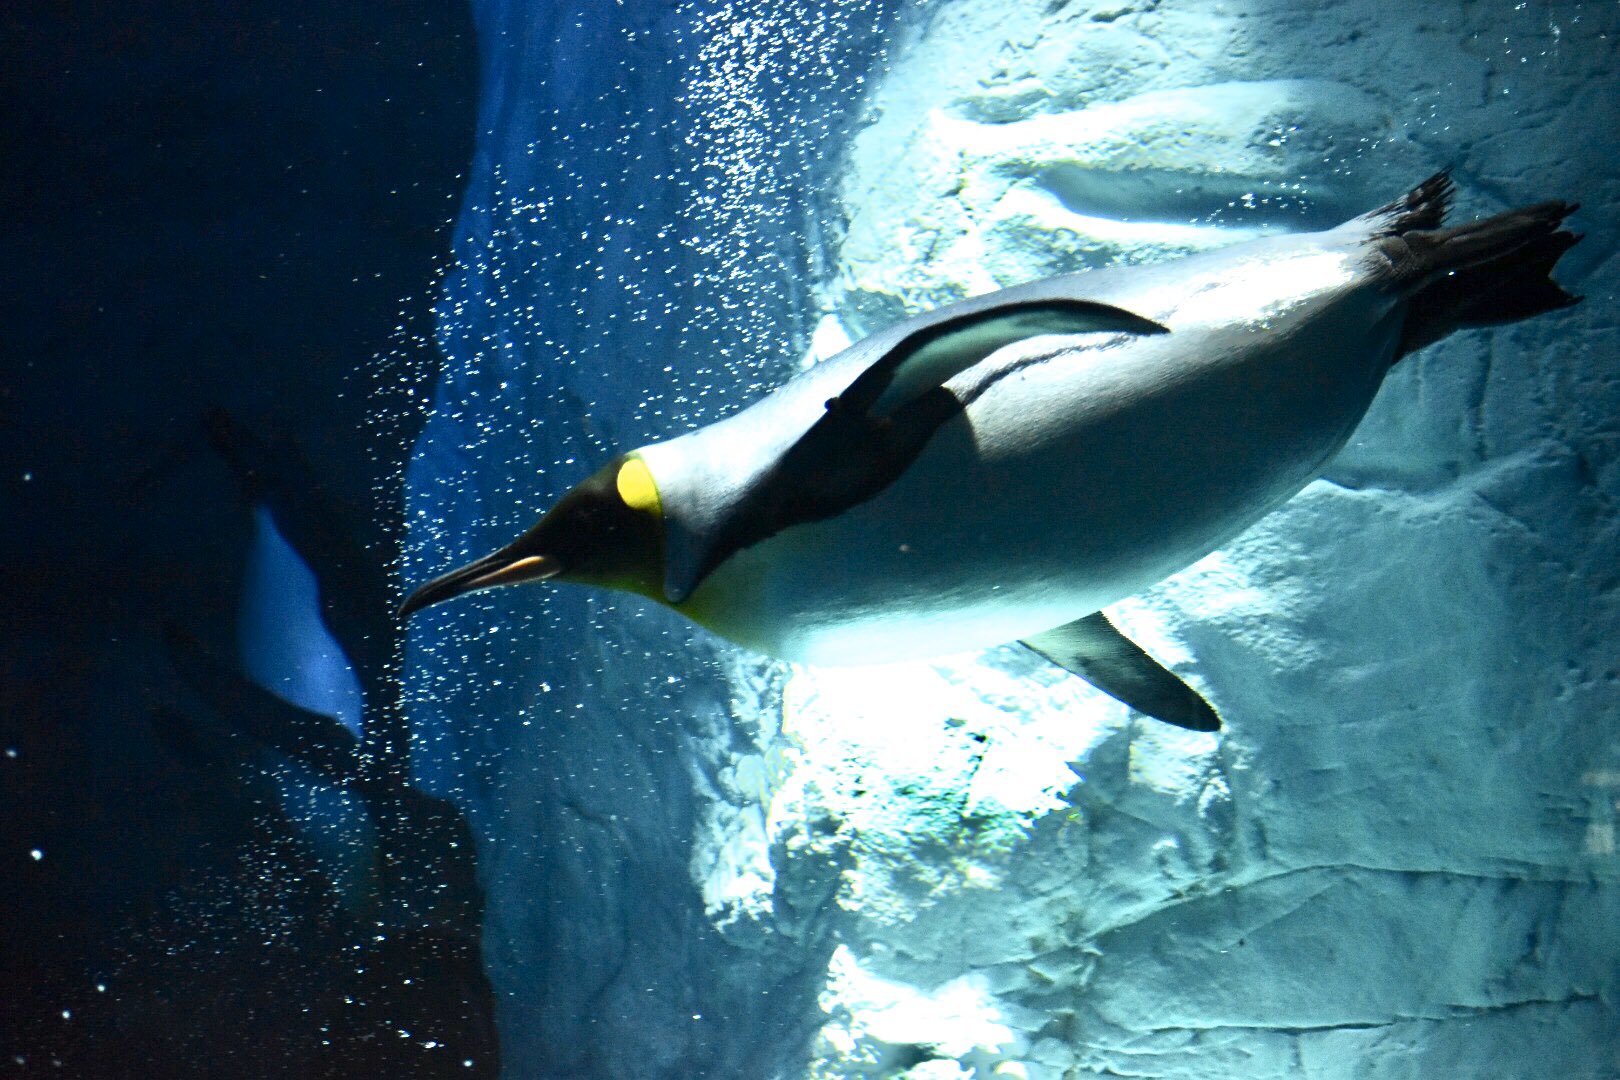 あみ 力強く泳ぐ姿 美しいです キングペンギン 海遊館 T Co Pyda95ngia Twitter